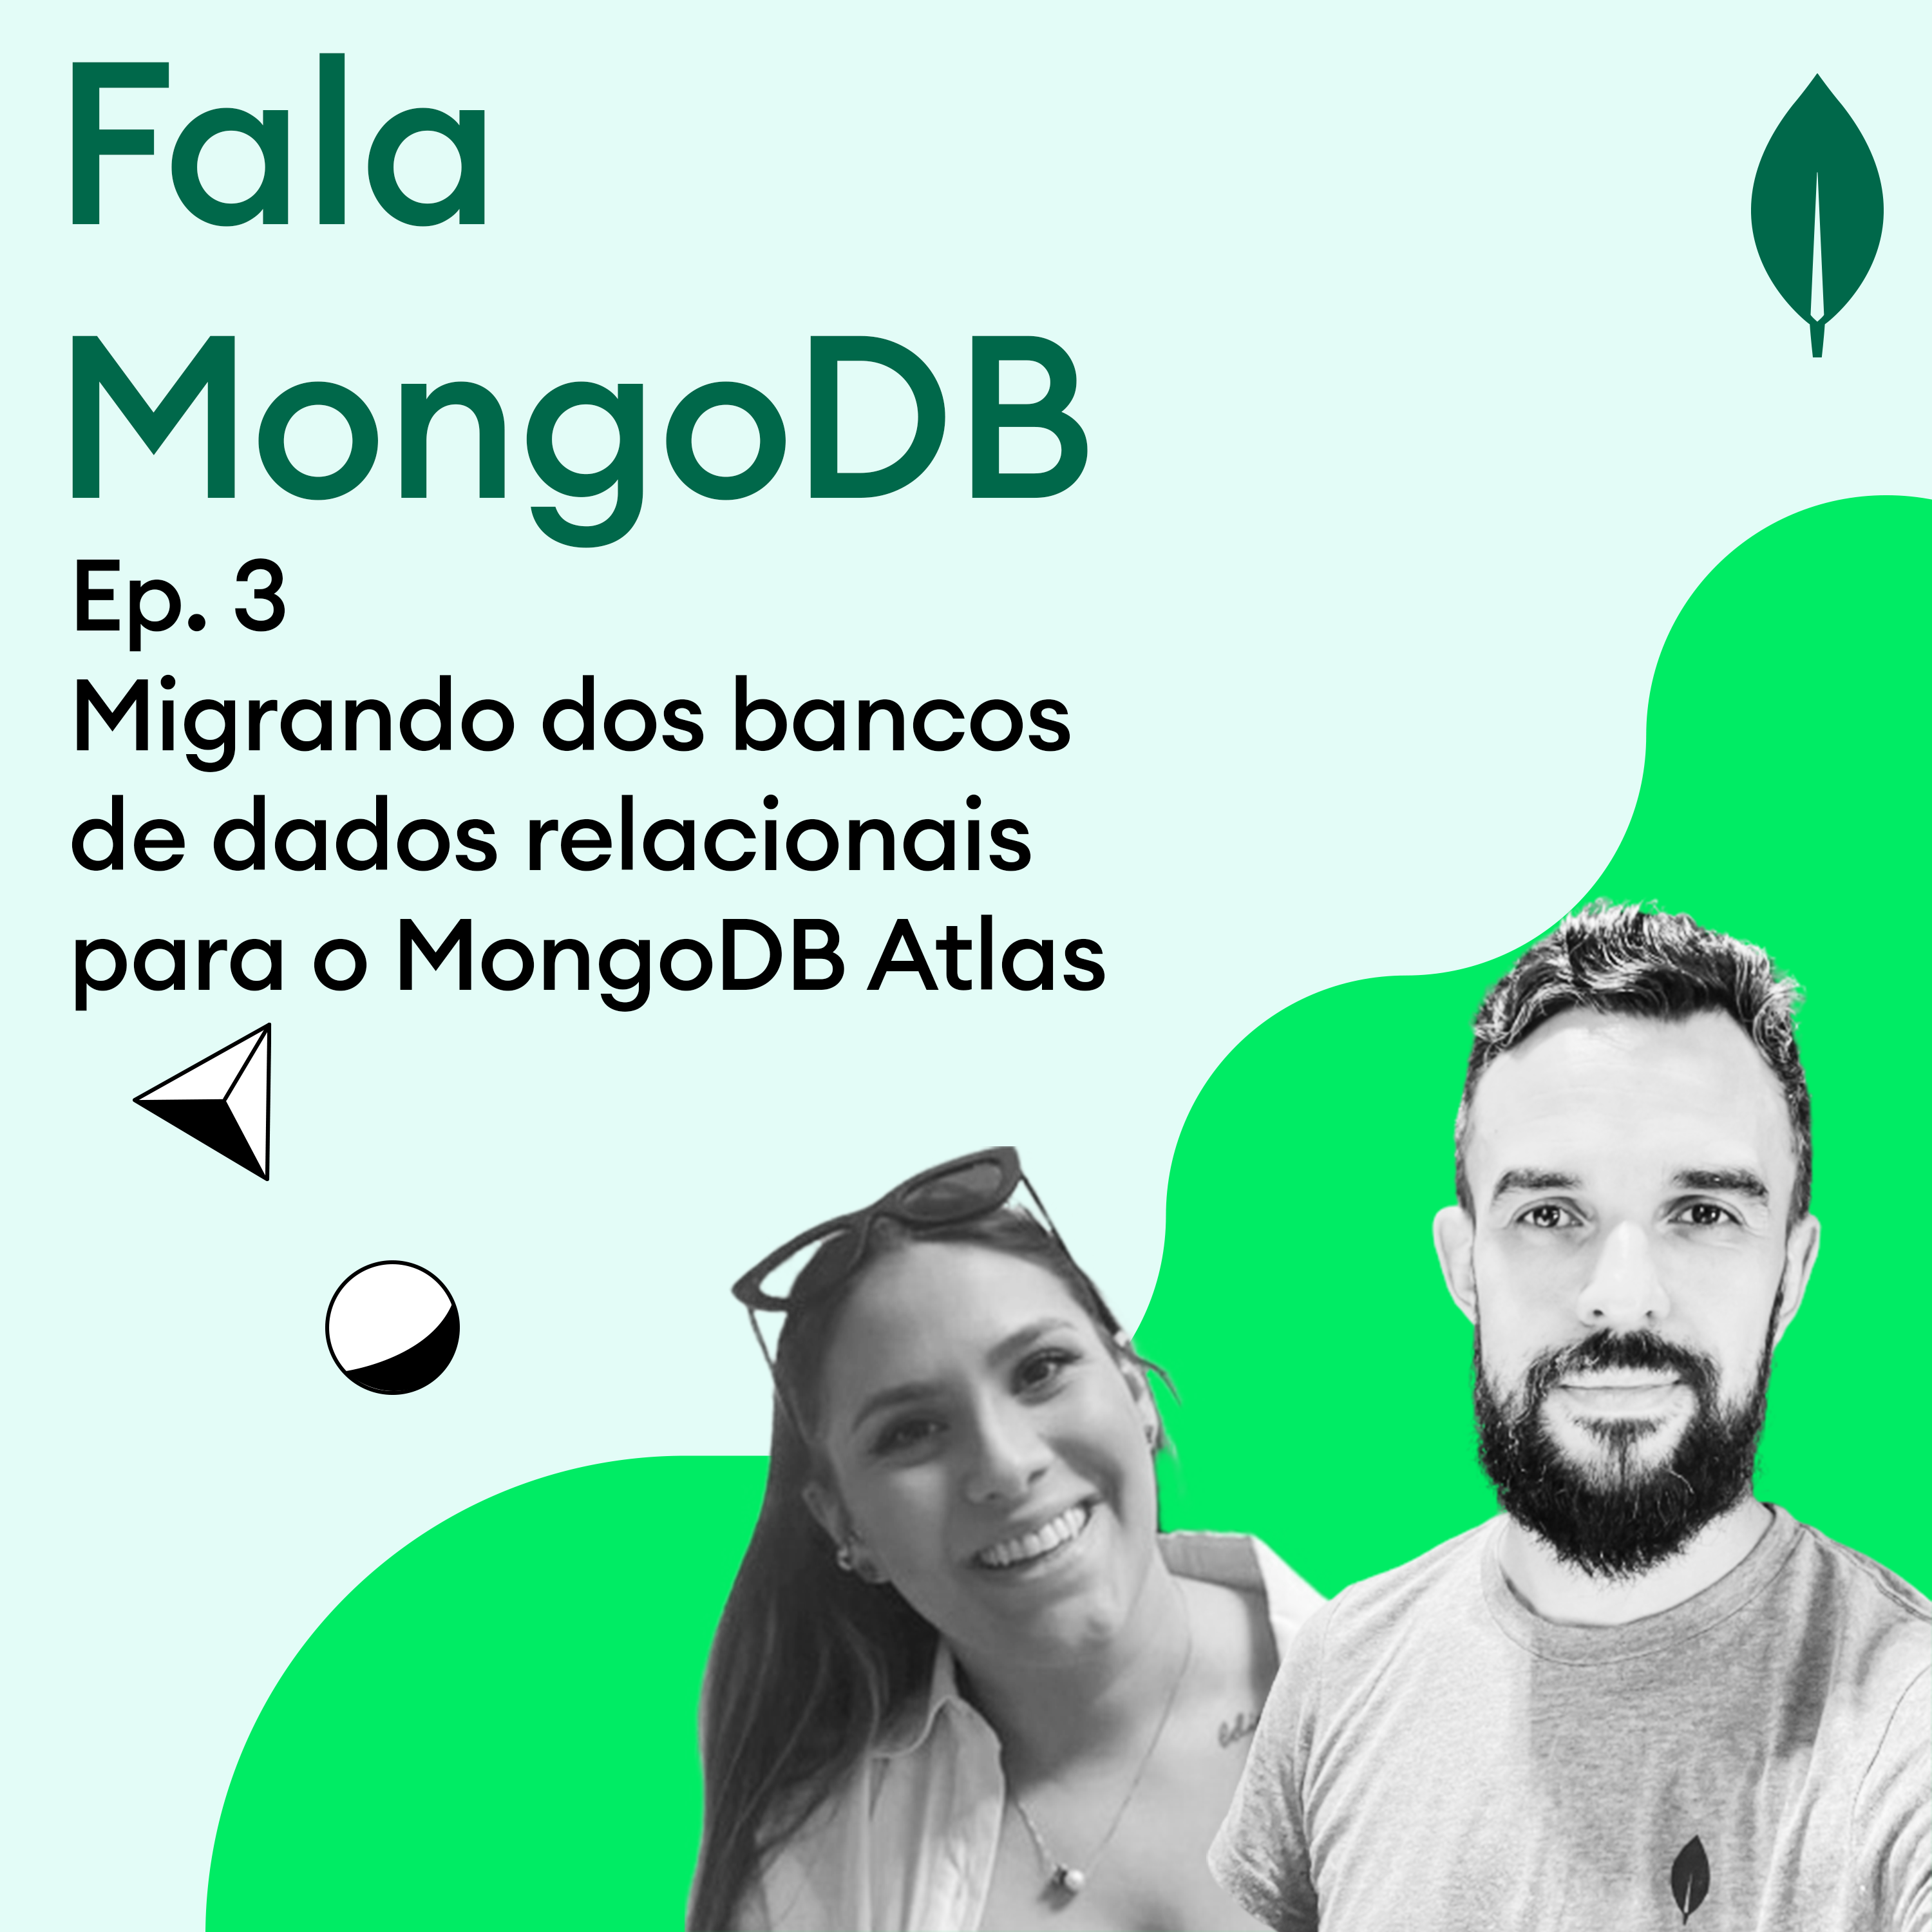 Fala MongoDB Ep.3 Migrando dos bancos de dados relacionais para o MongoDB Atlas